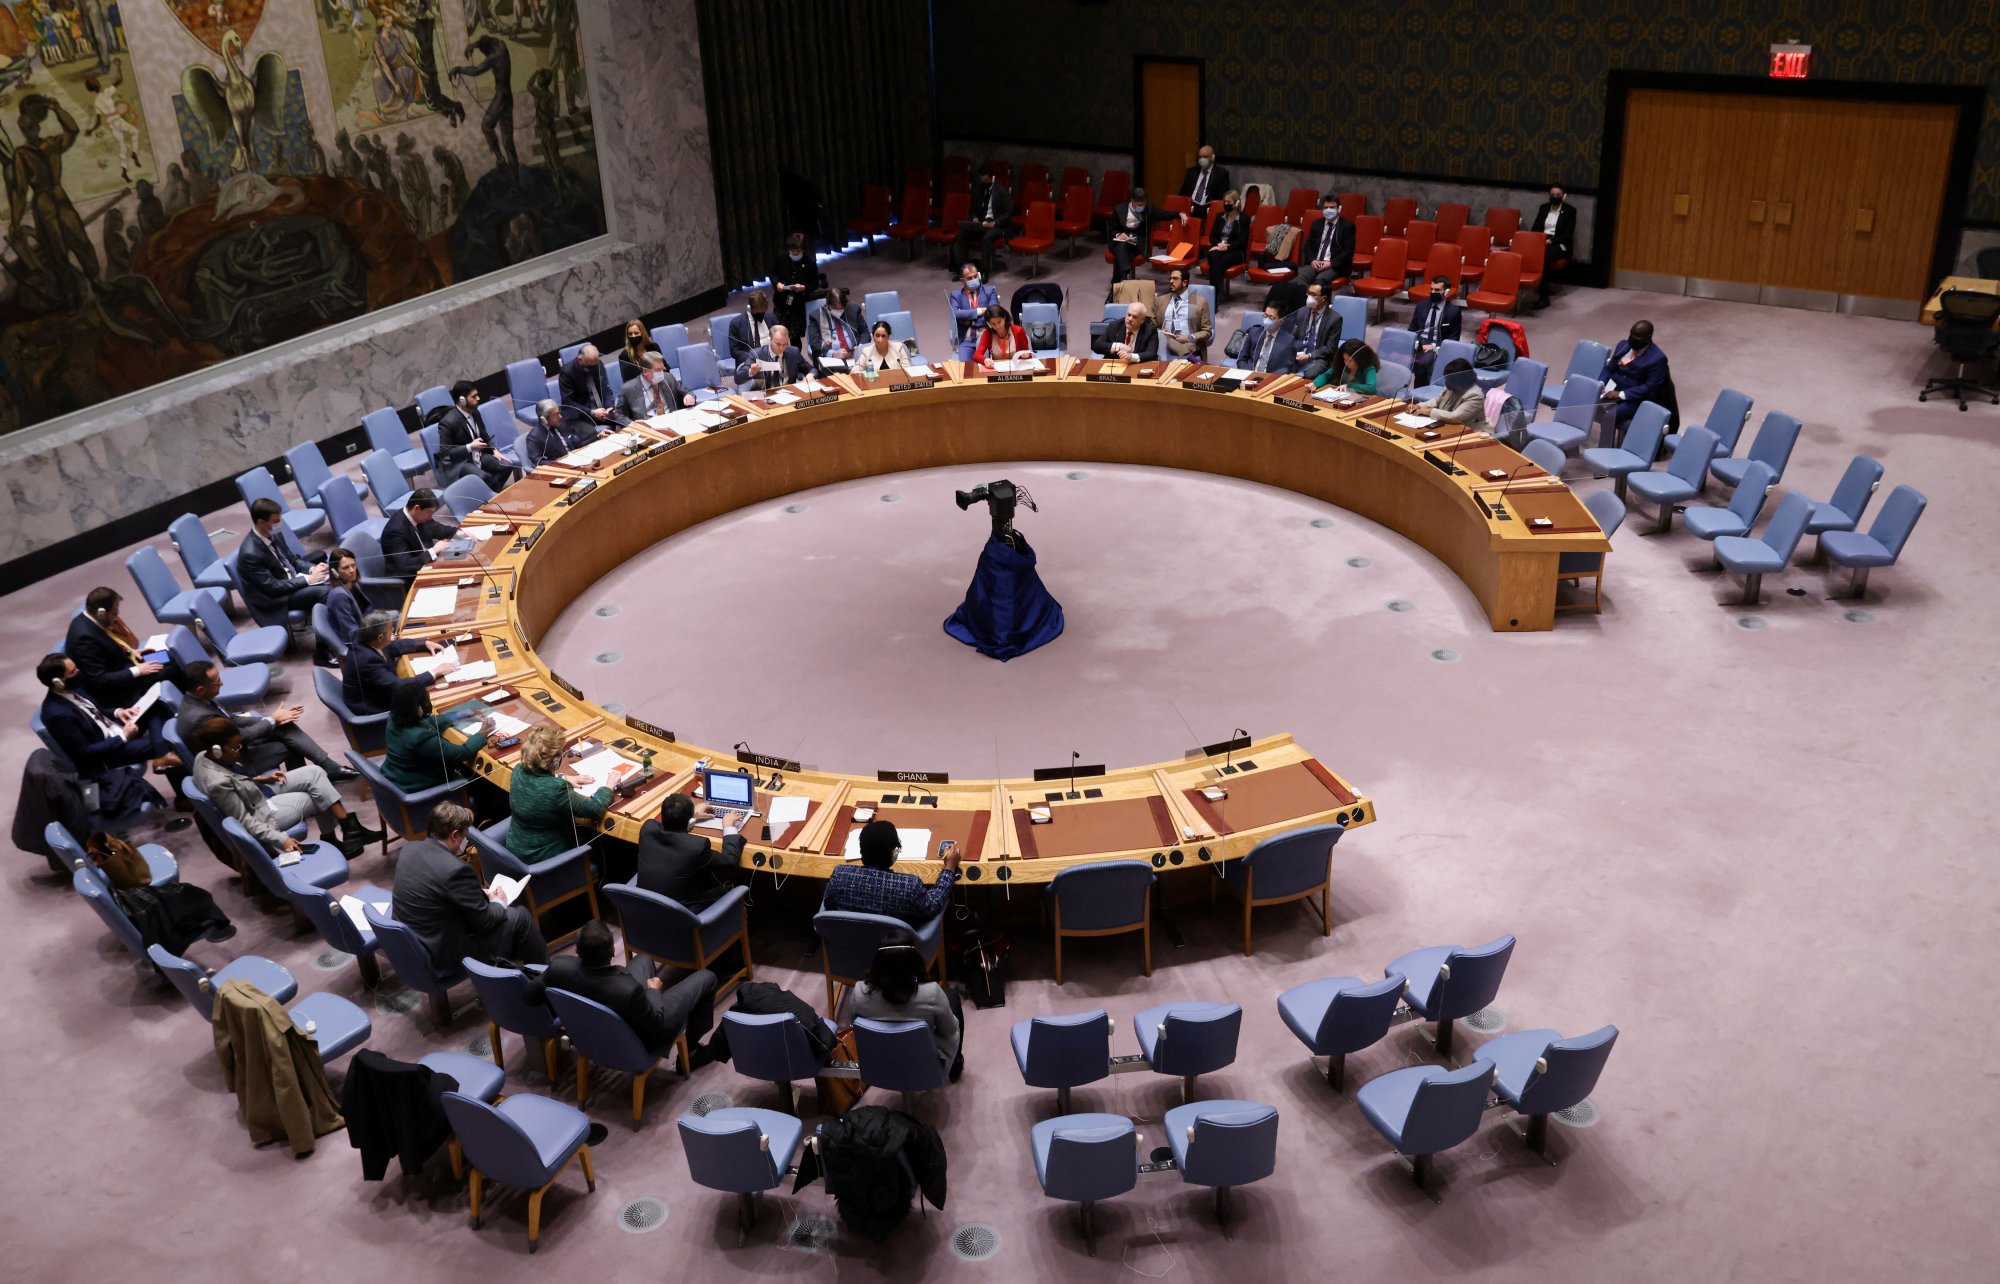 ΟΗΕ: Το Συμβούλιο Ασφαλείας καταδικάζει την «ποταπή τρομοκρατική επίθεση» στο Ιράν